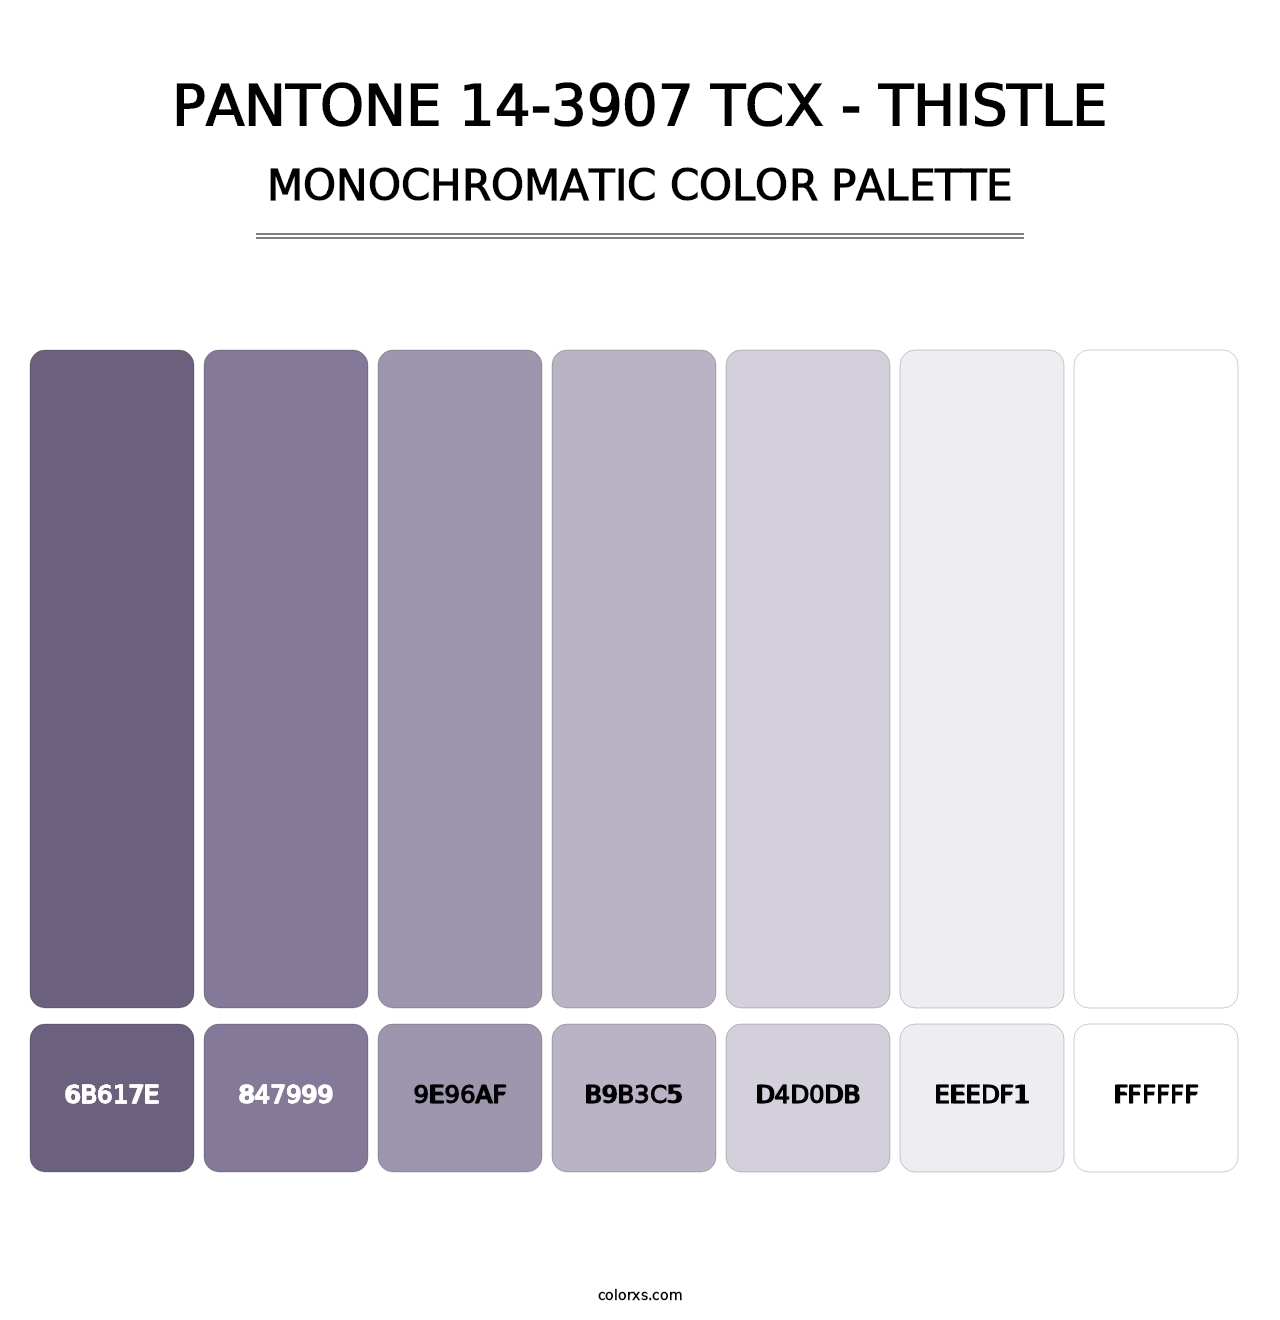 PANTONE 14-3907 TCX - Thistle - Monochromatic Color Palette